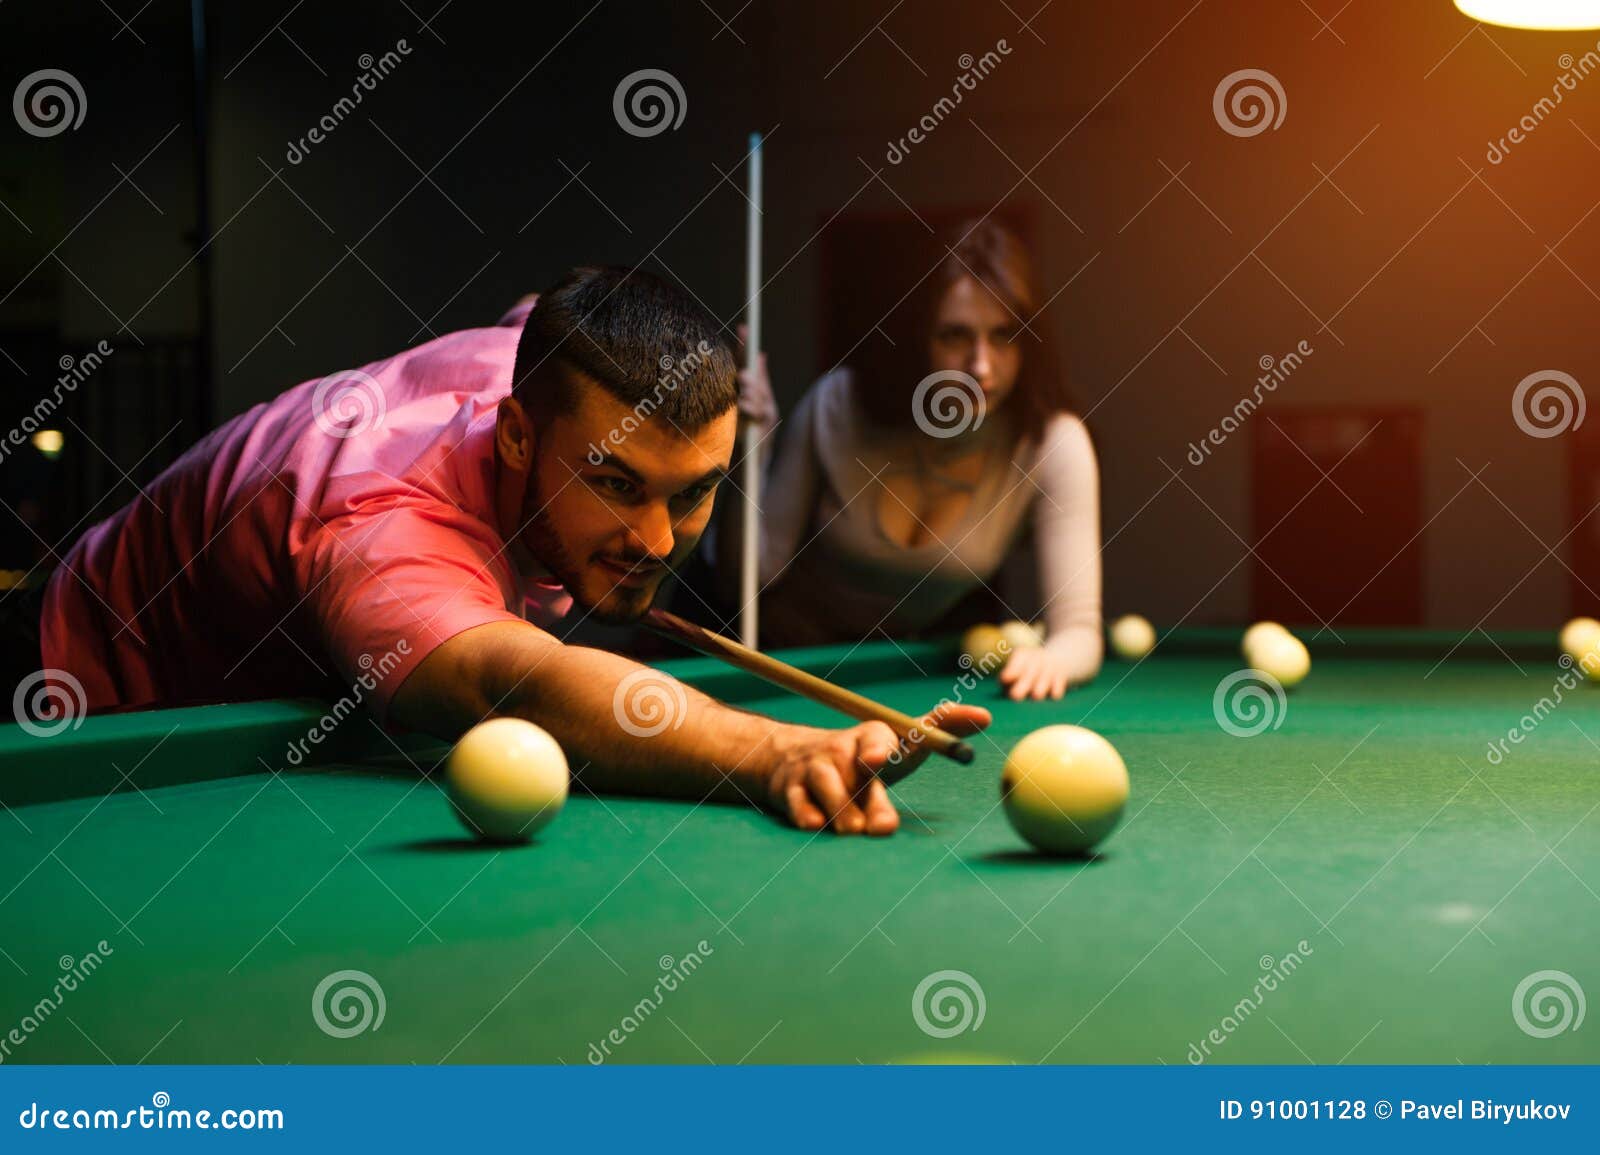 Romantic Couple Having Fun Playing Billiard Game Stock Photo